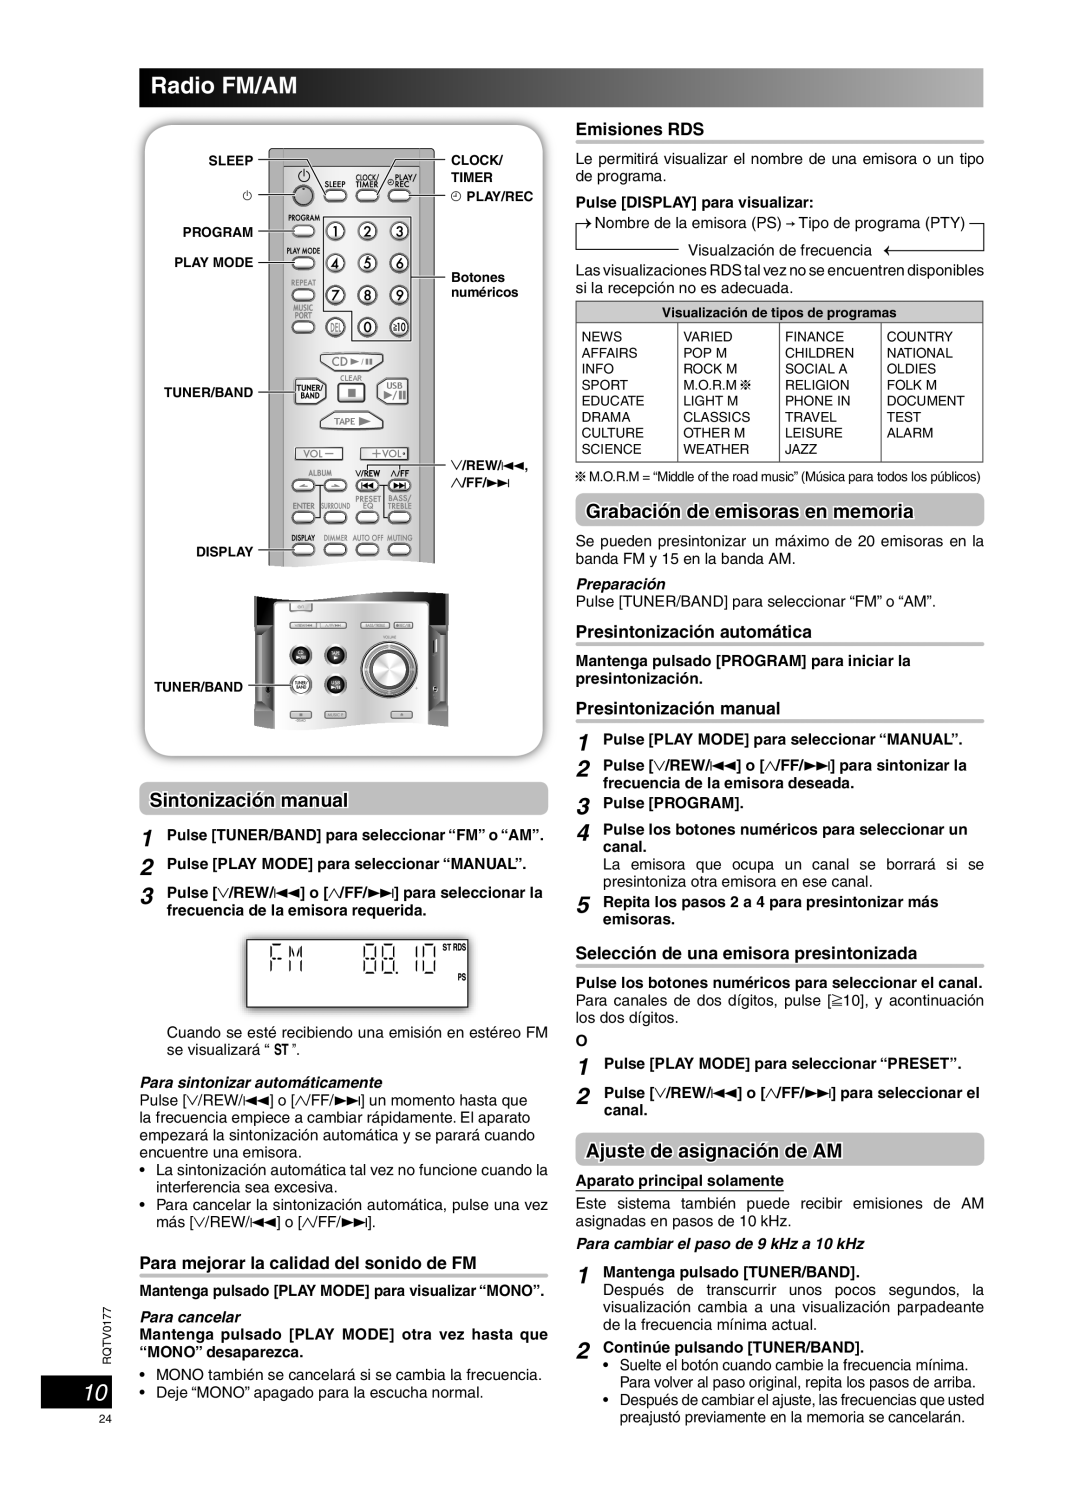 Panasonic SC-PM45 Radio FM/AM, Sintonización manual, Grabación de emisoras en memoria, Ajuste de asignación de AM 